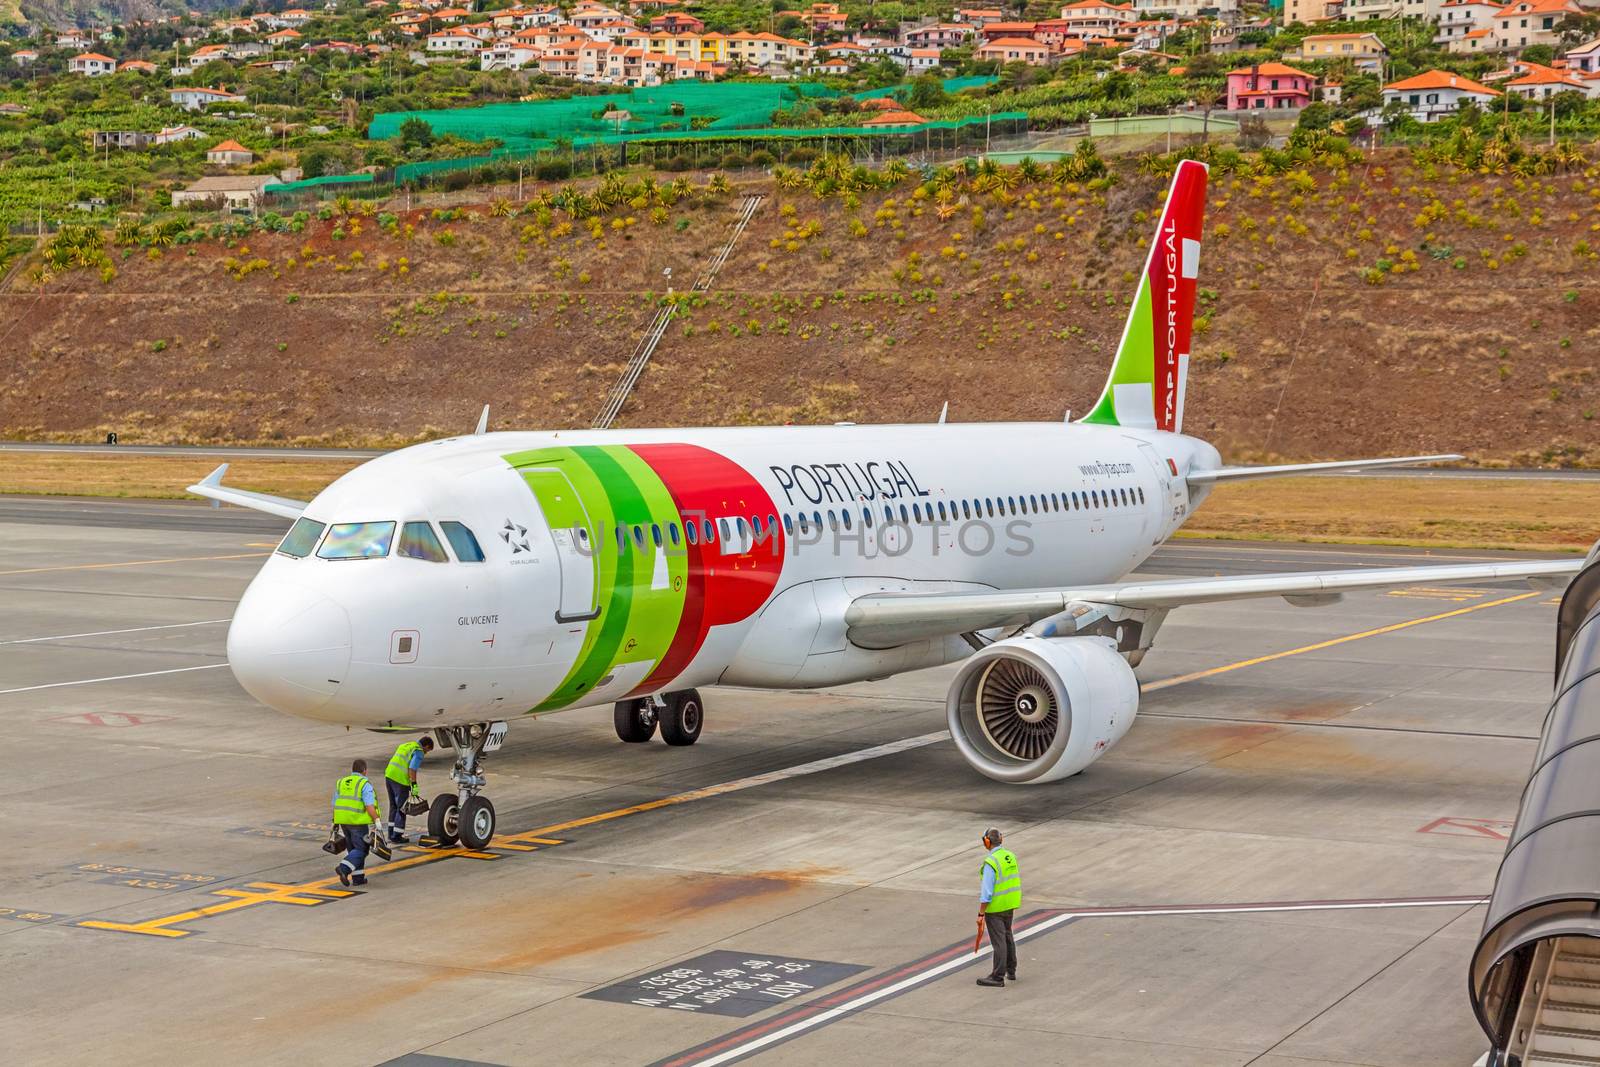 Airport Madeira - Airbus A320 by aldorado